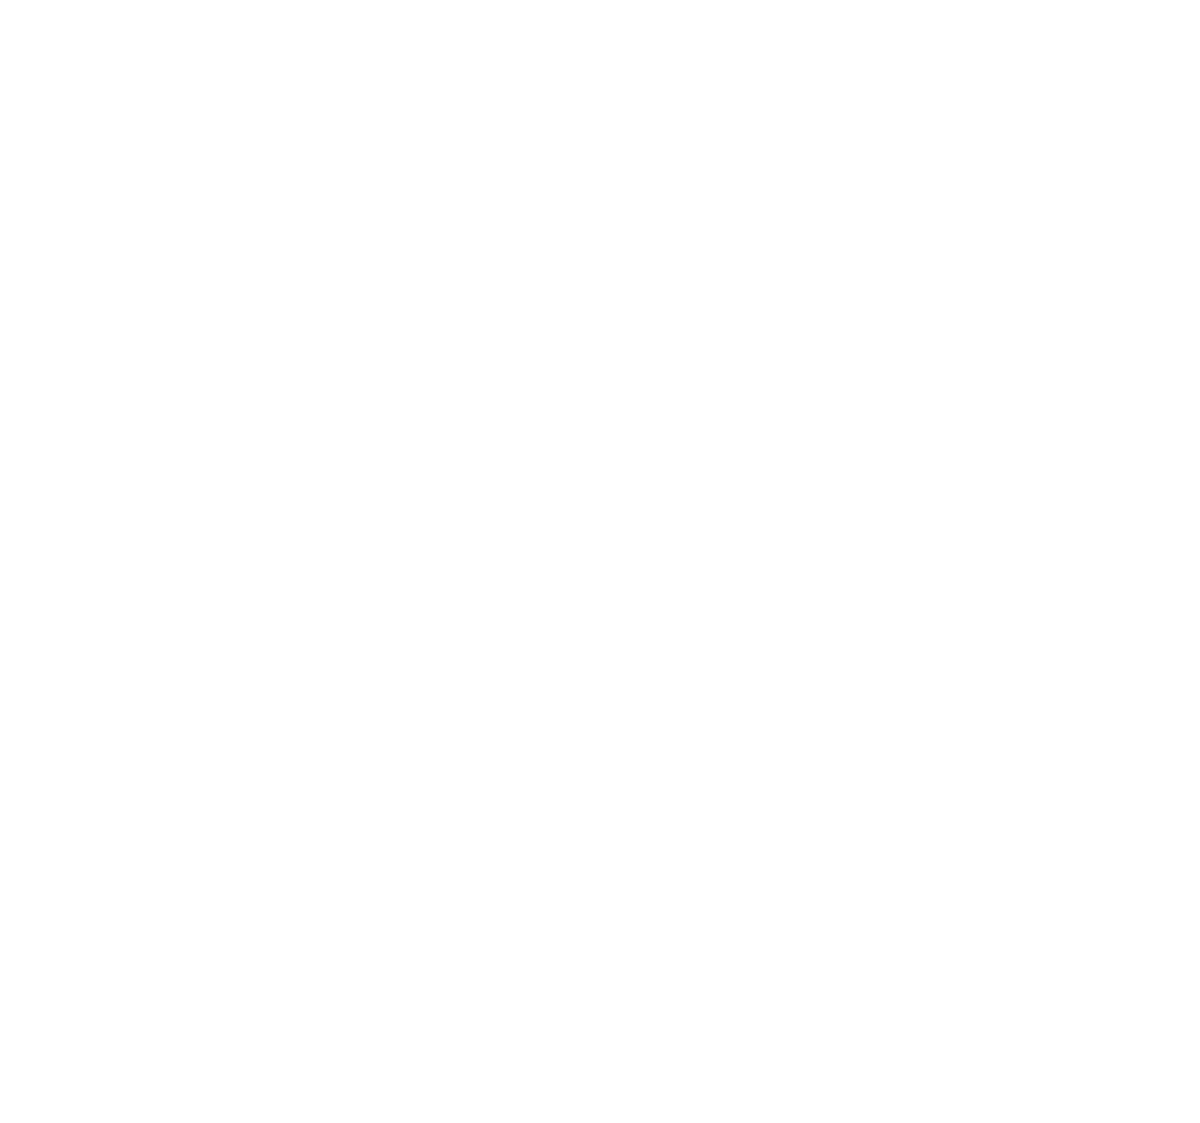 mclx